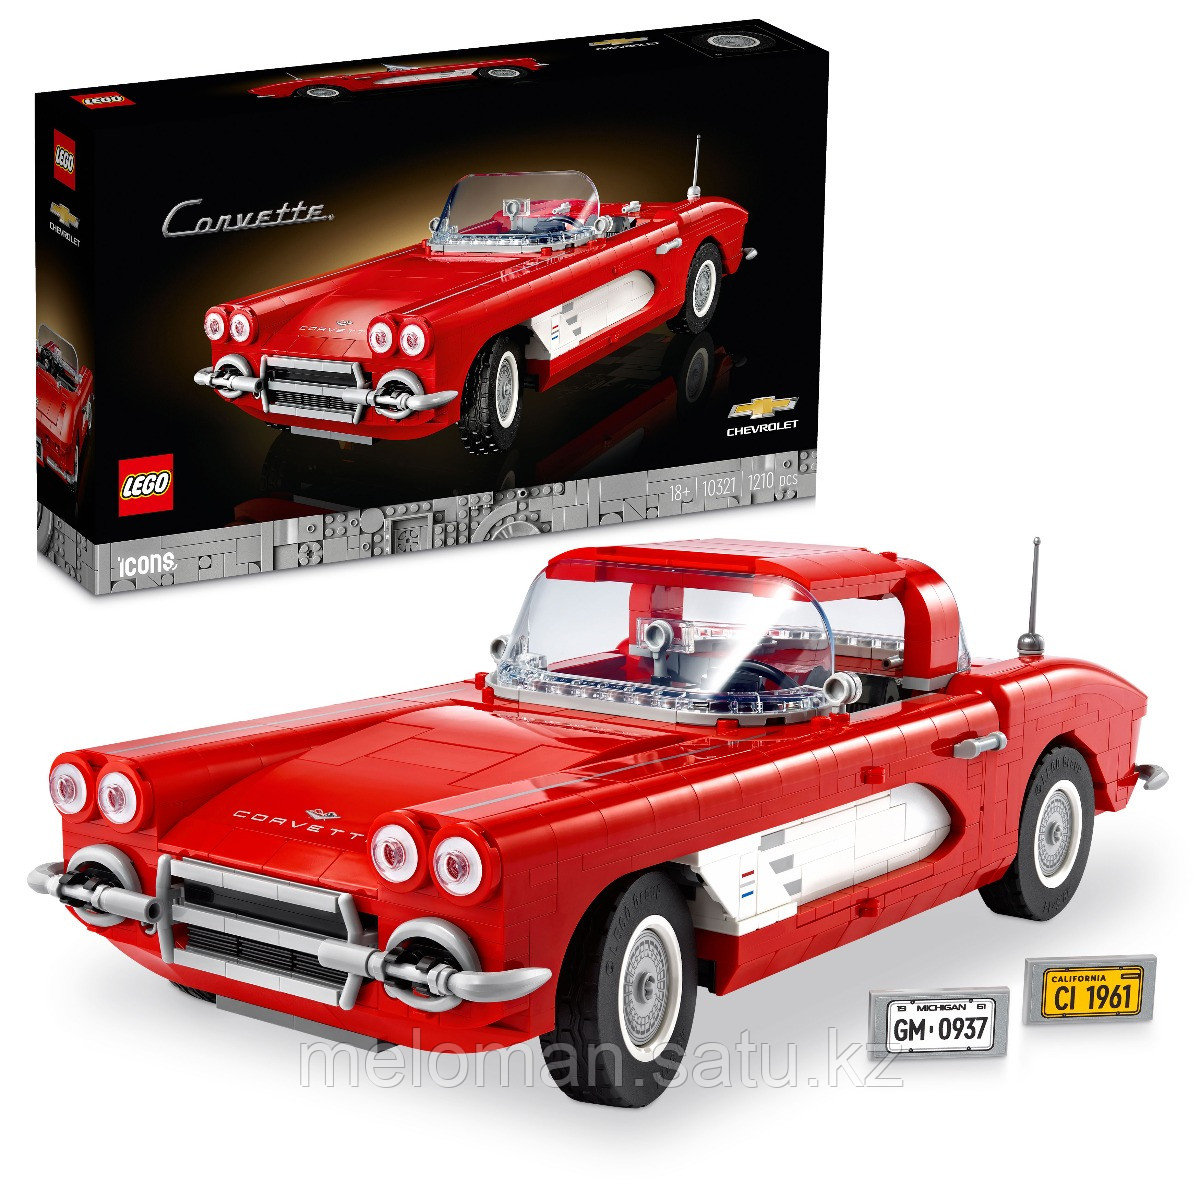 LEGO: Corvette Icons 10321